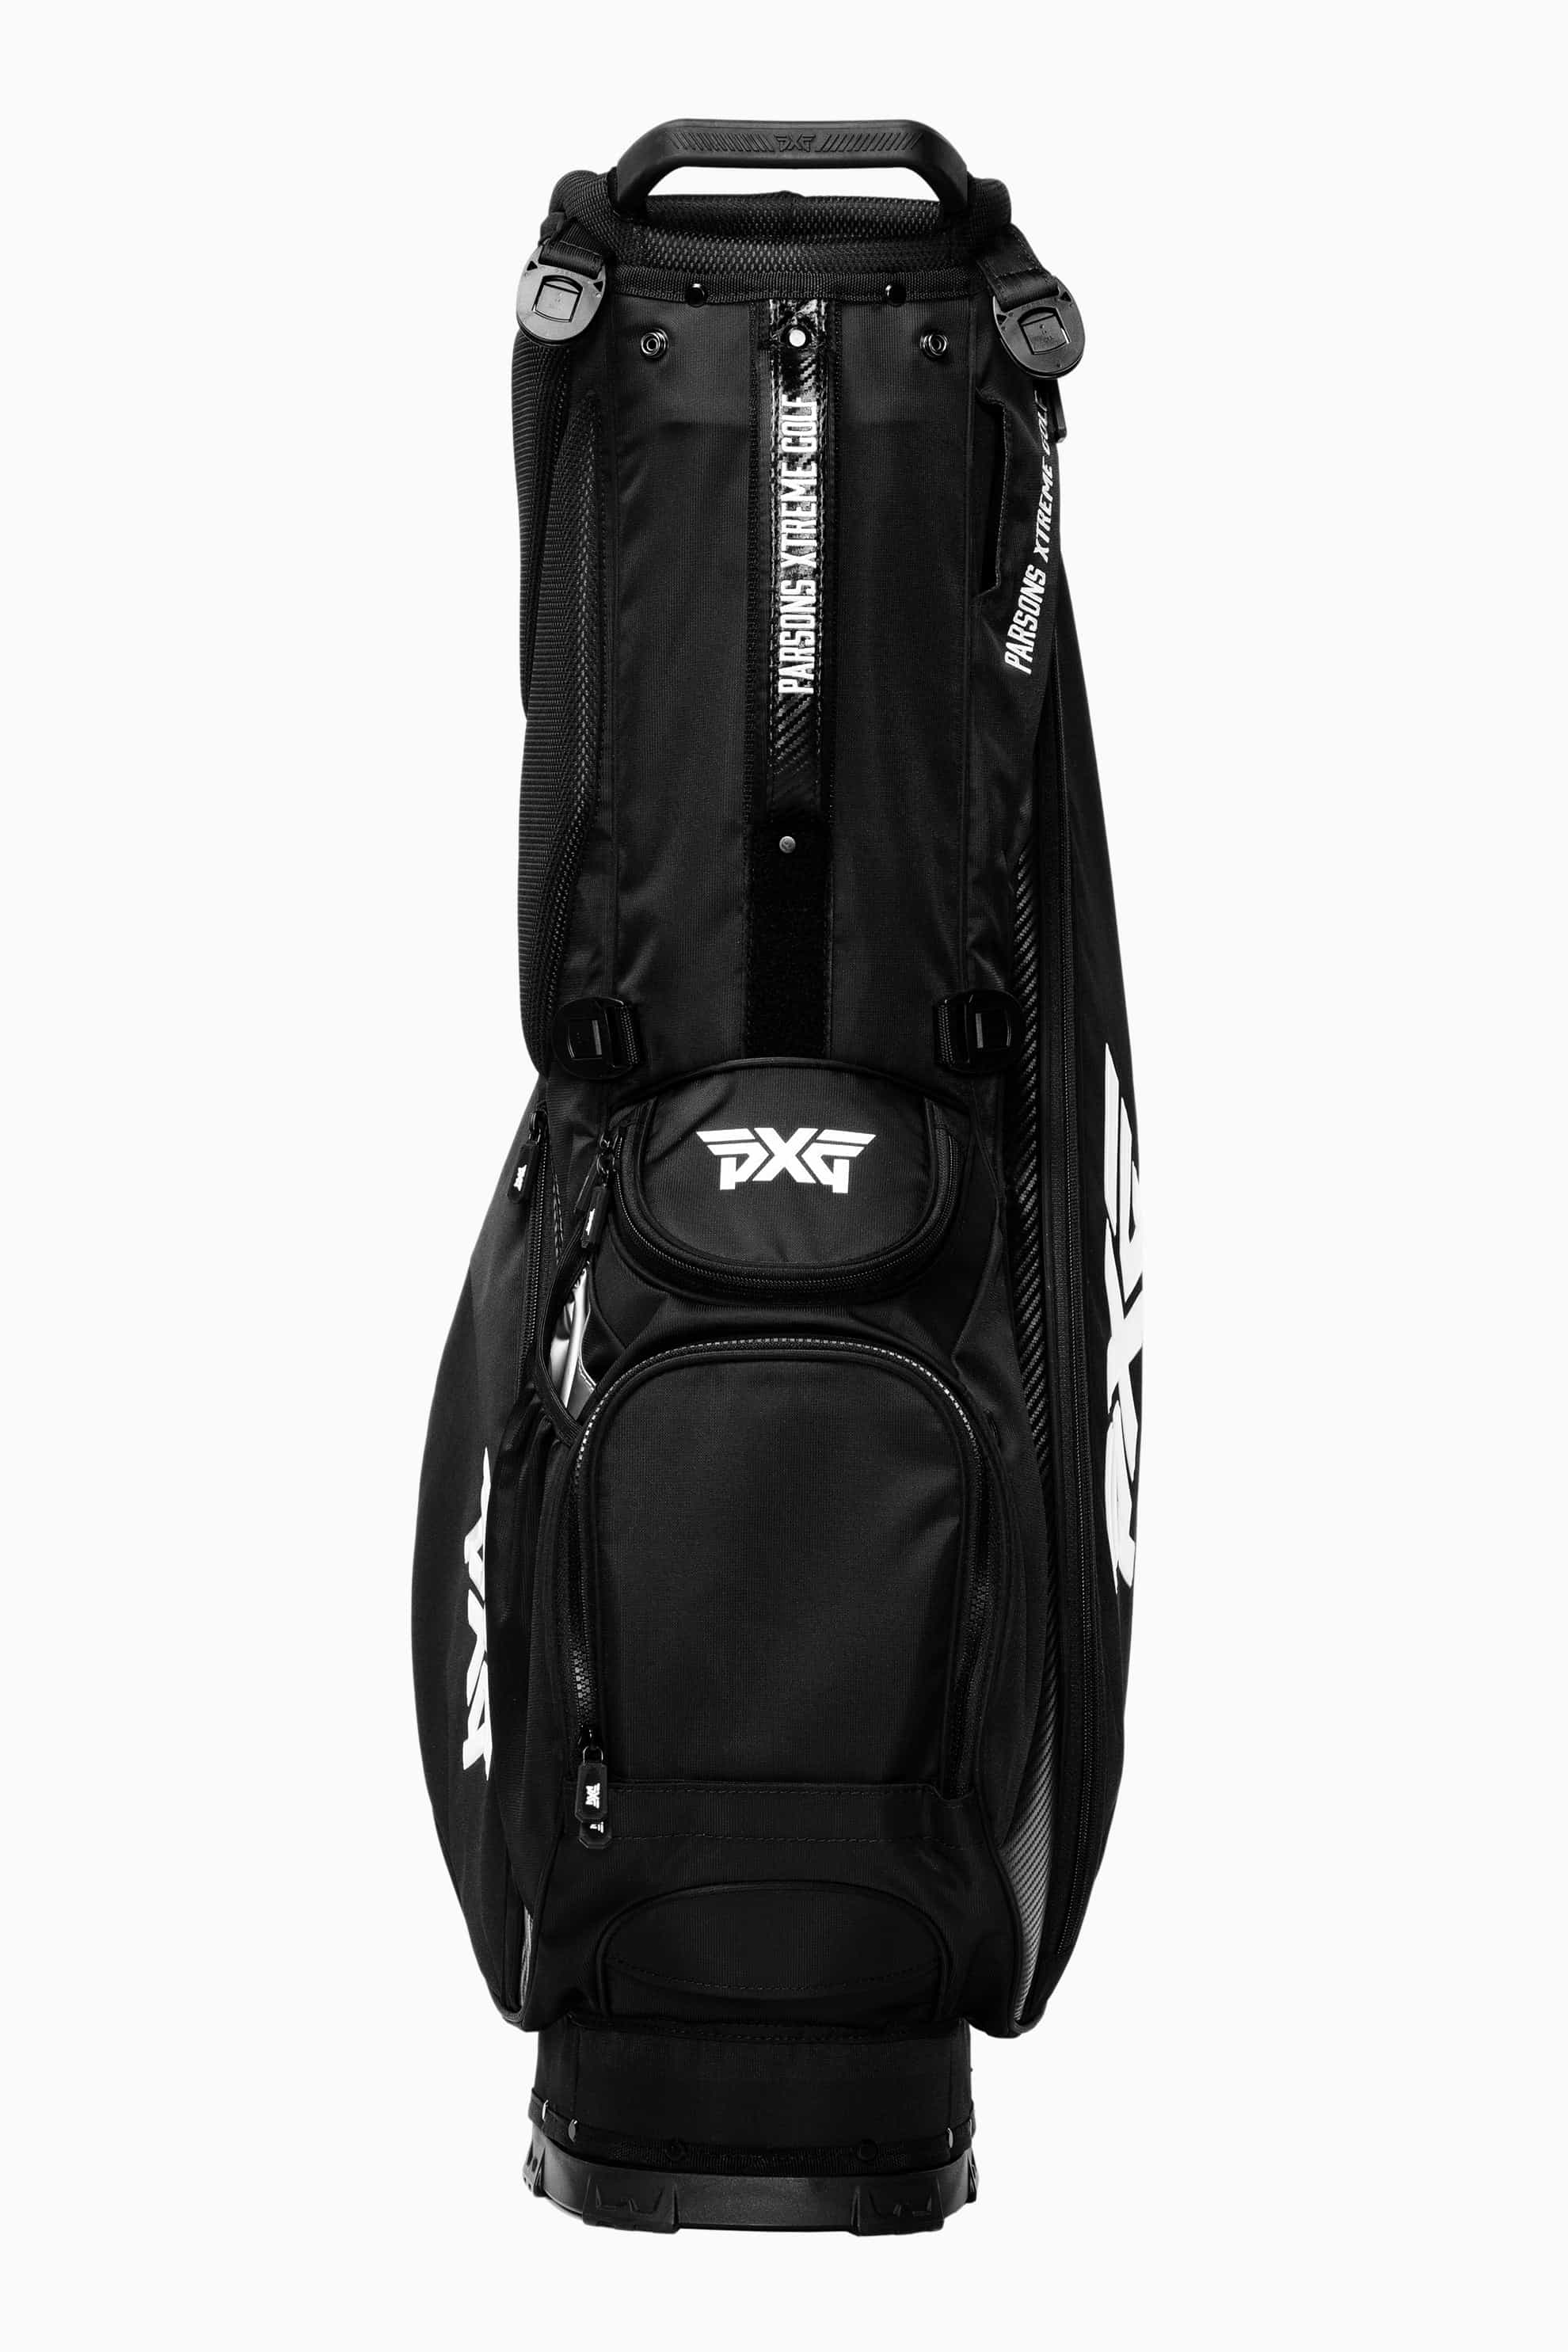 LIghtweight Carry Stand Bag | Golf Bags | Standing, Carry & Cart 